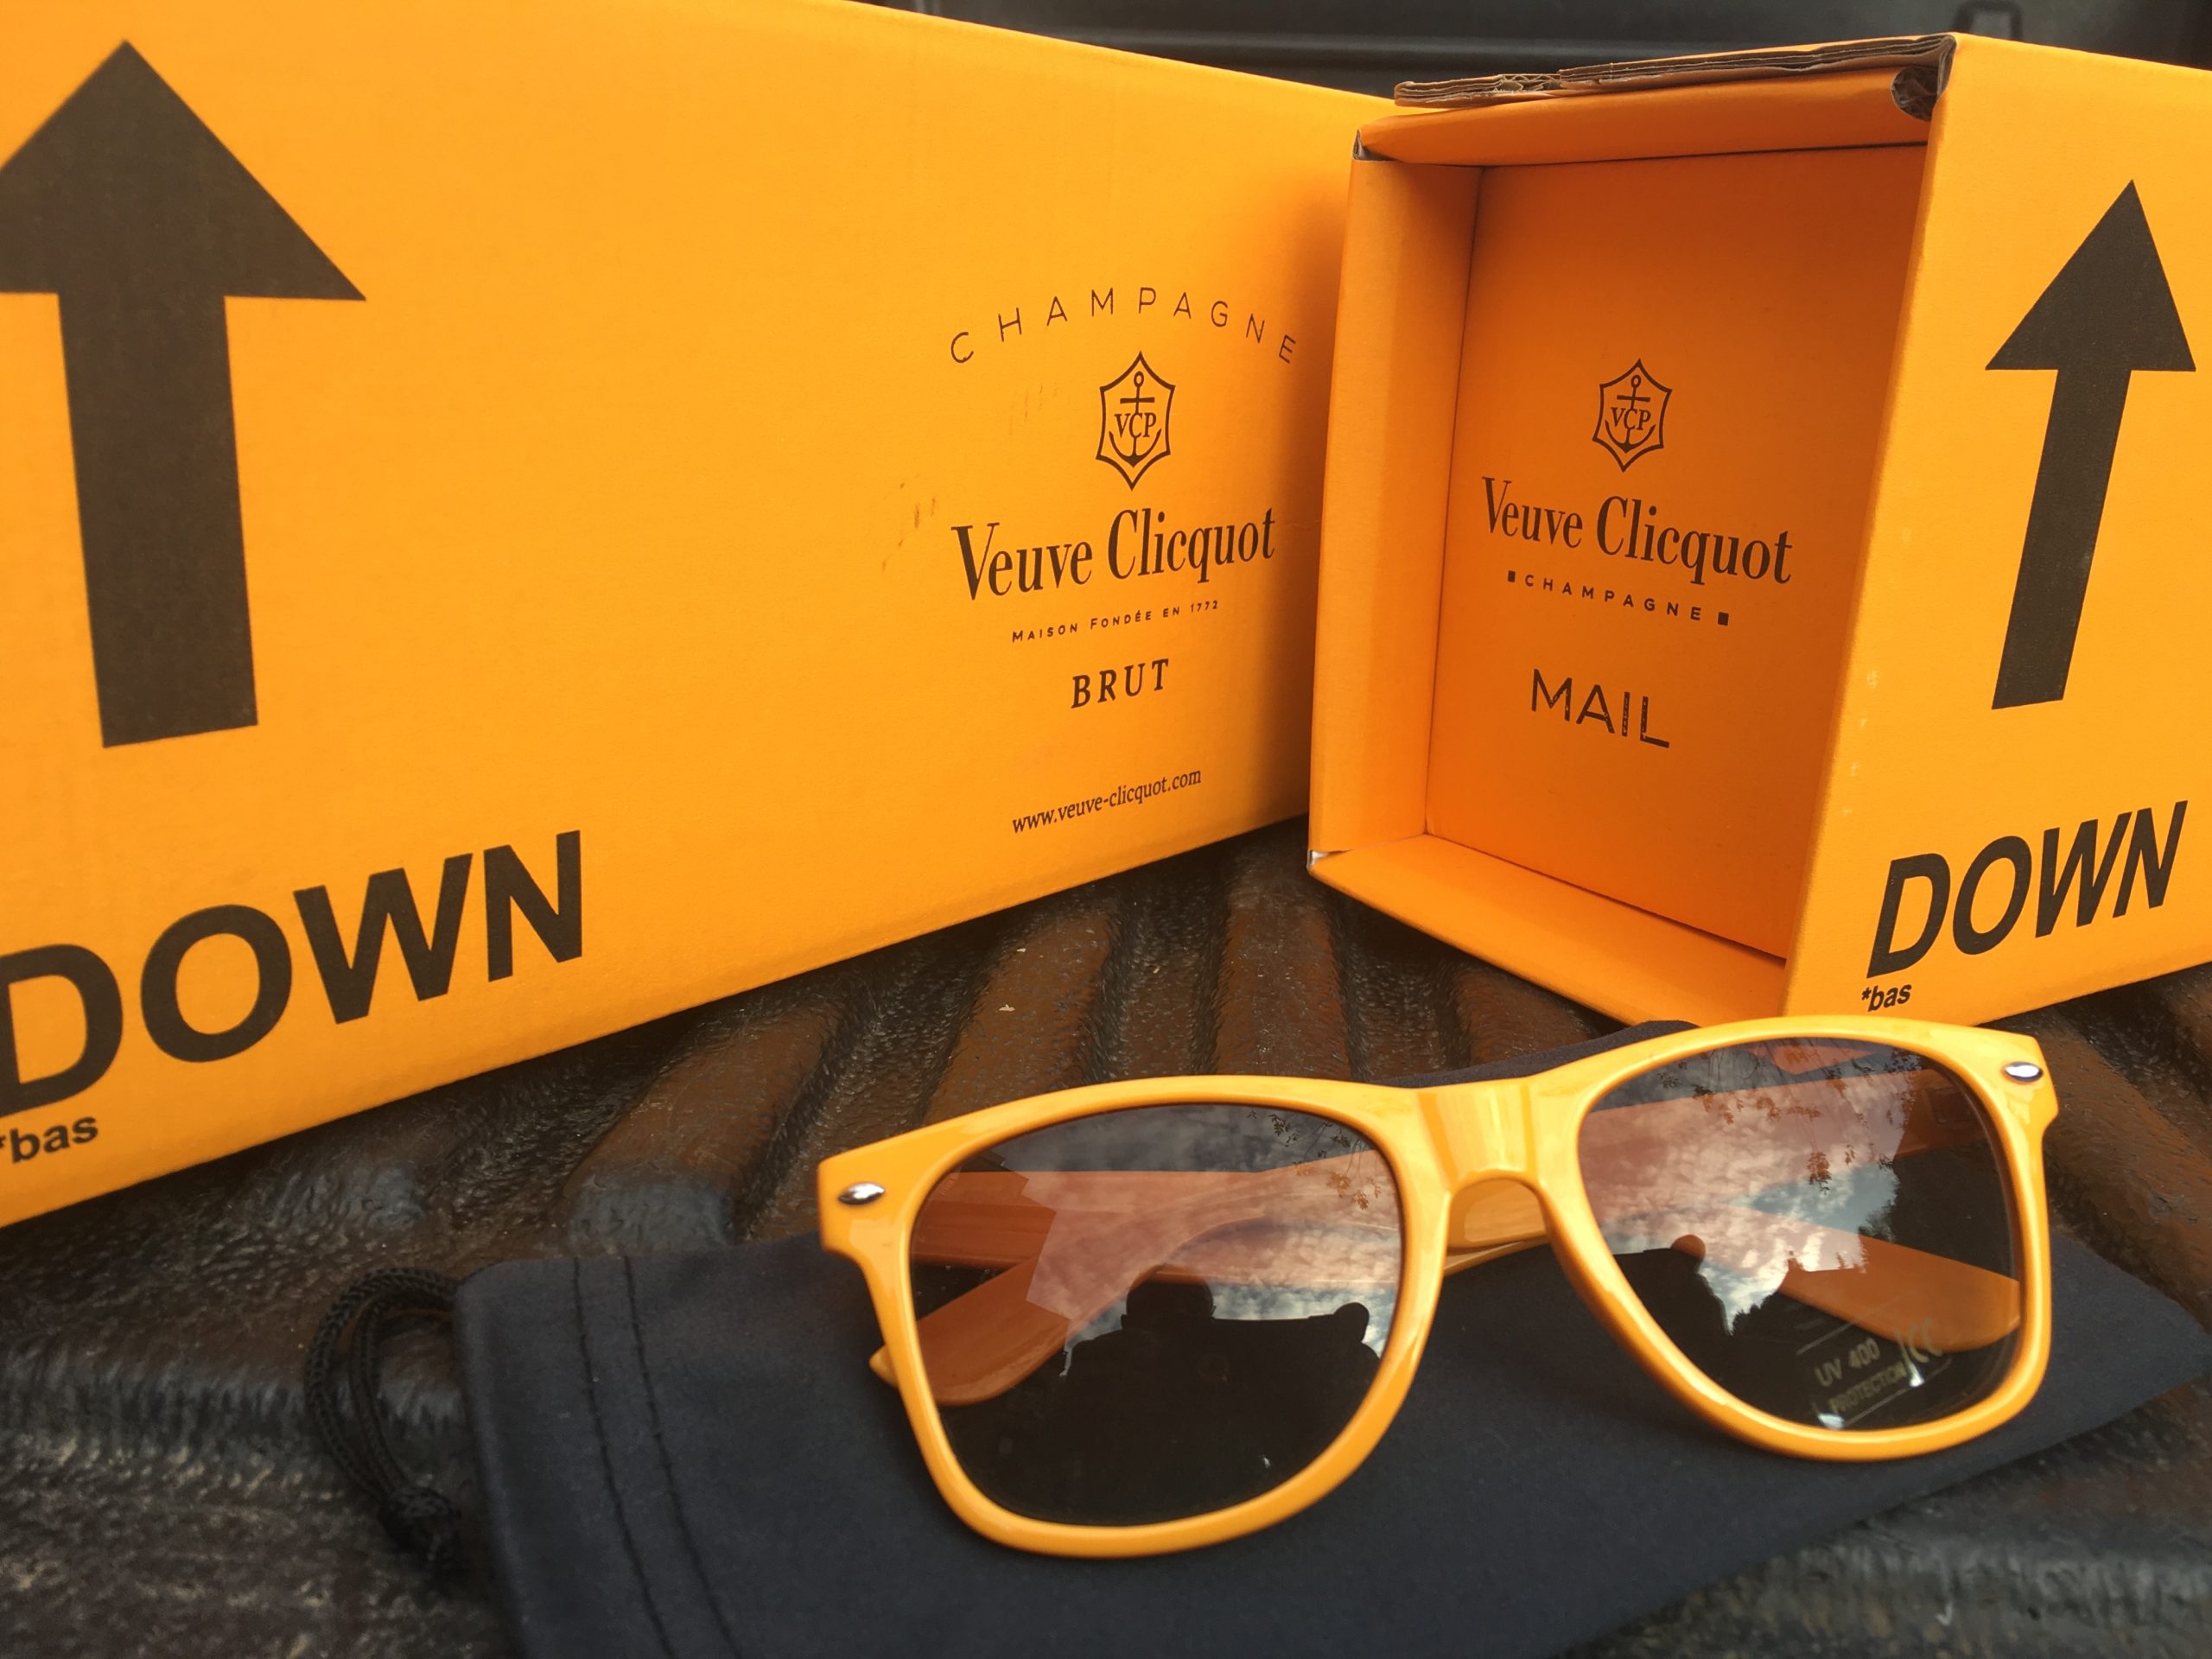 Két palack Veuve Clicquot NV Brut a legendás Express Box csomagolásban + 1 Veuve Clicquot napszemüveg – 78.700.-Ft